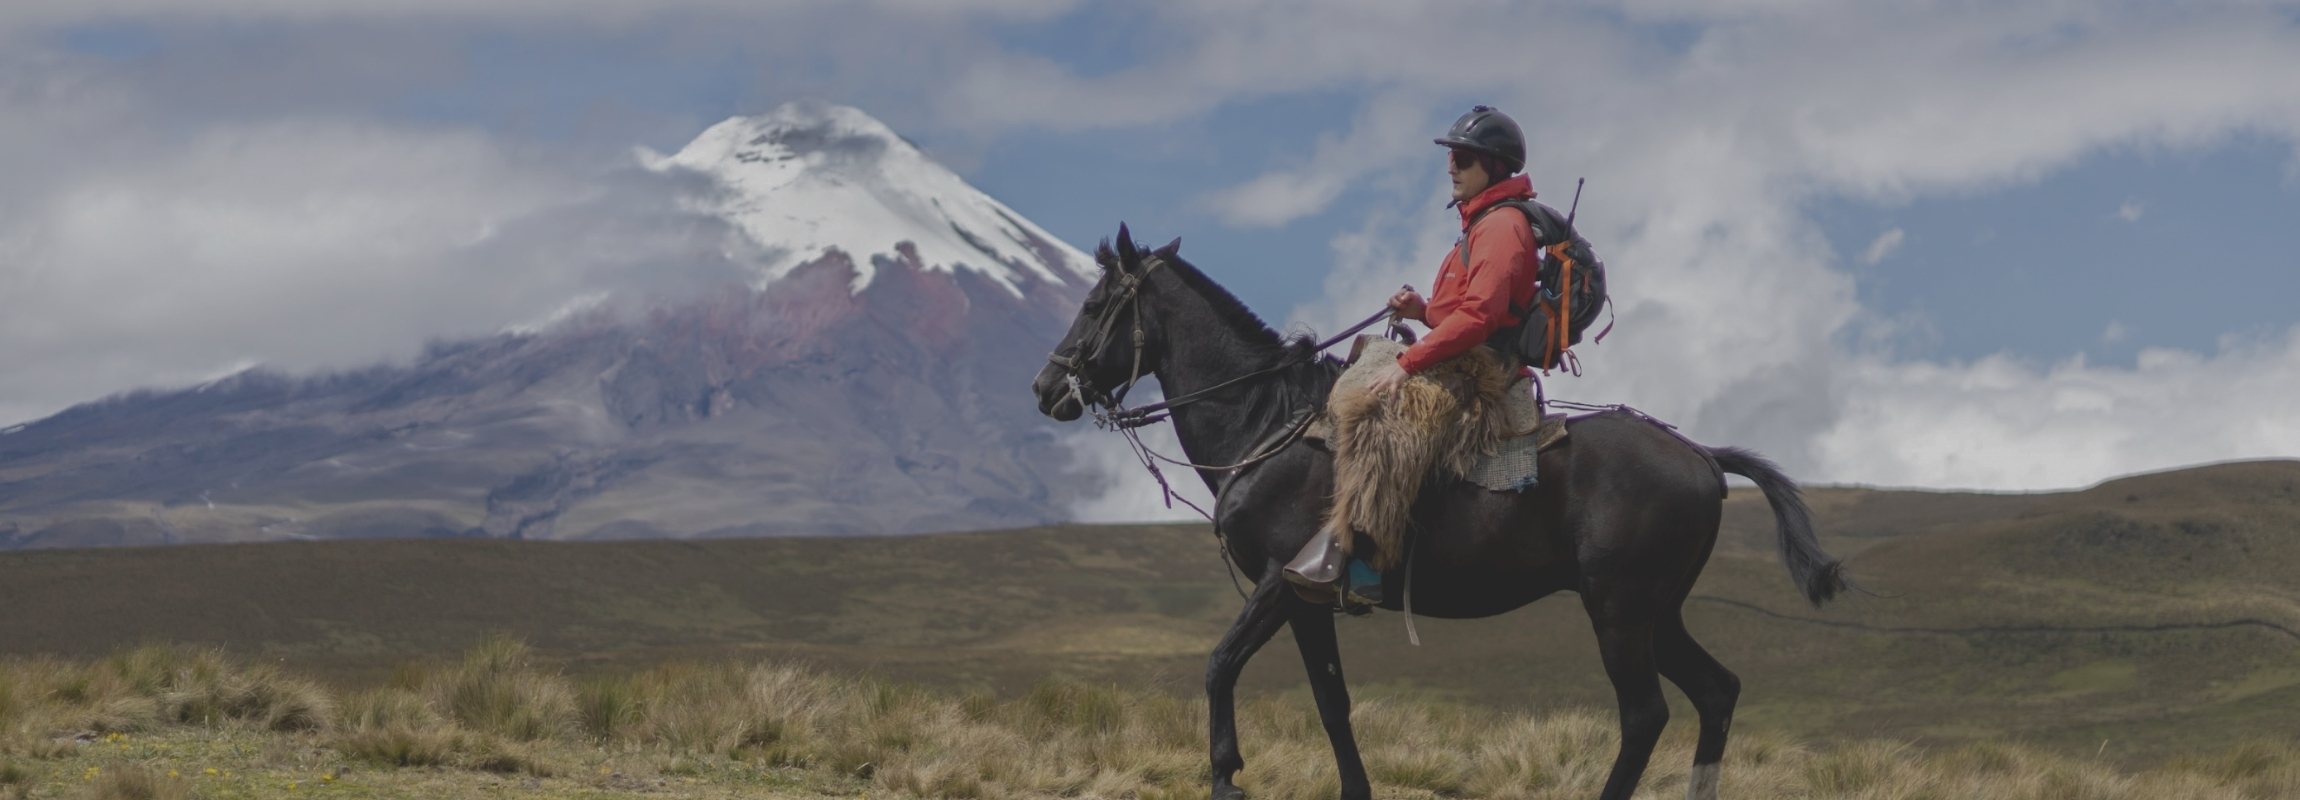 Ride the Trails: Horseback Riding Adventures in Ecuador